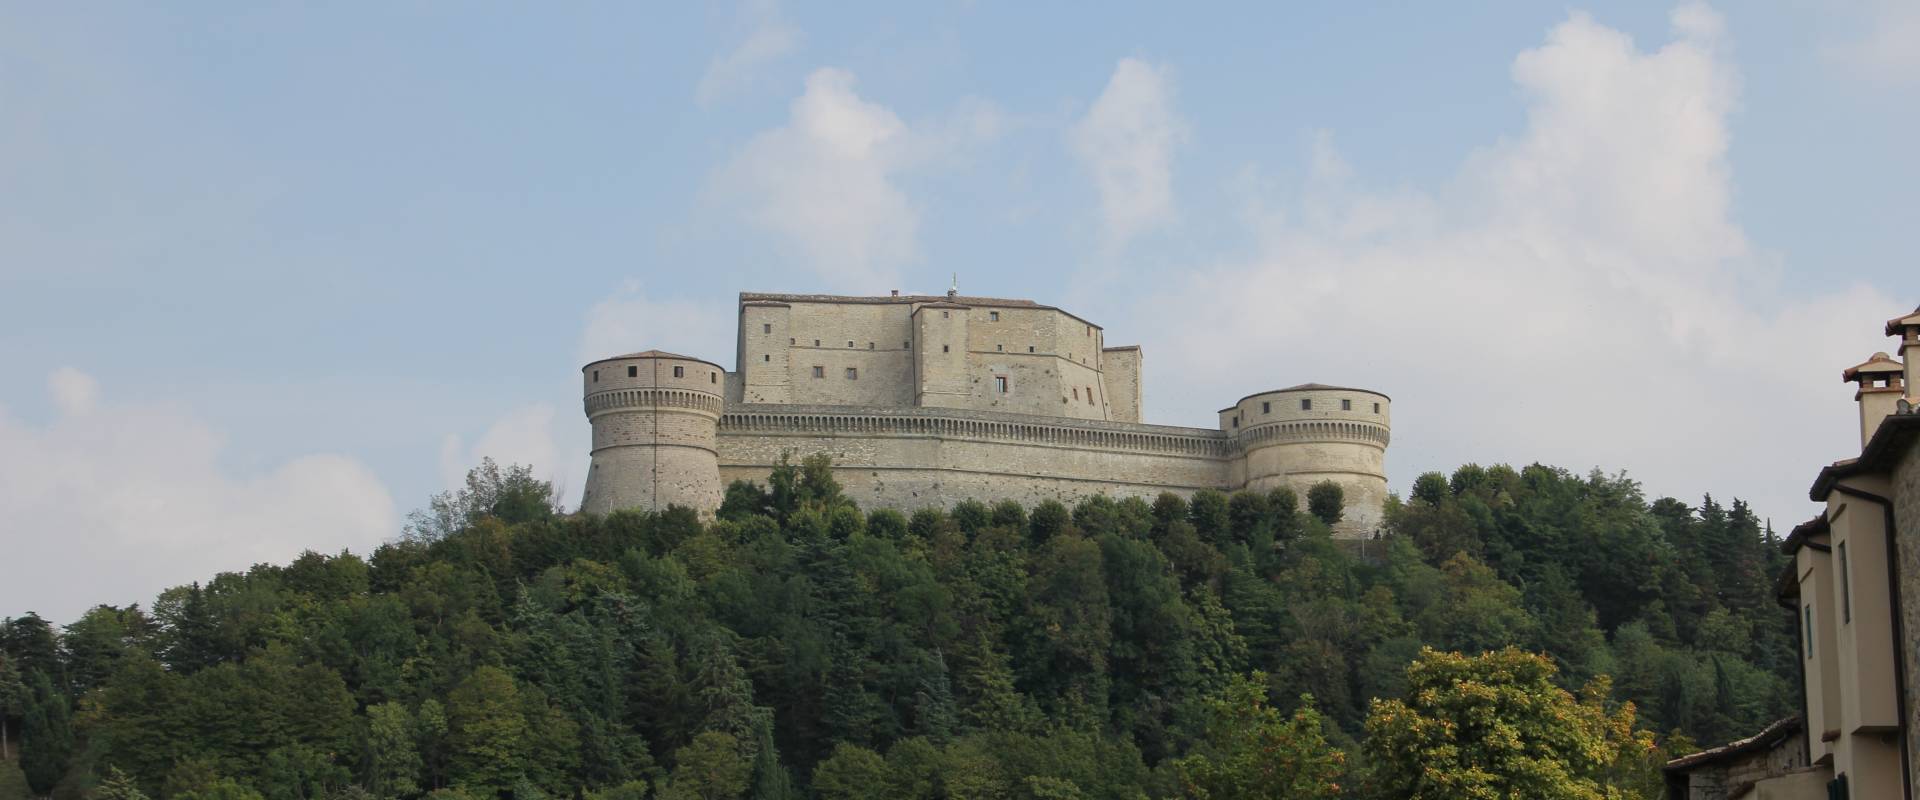 San Leo, forte di San Leo (10) foto di Gianni Careddu